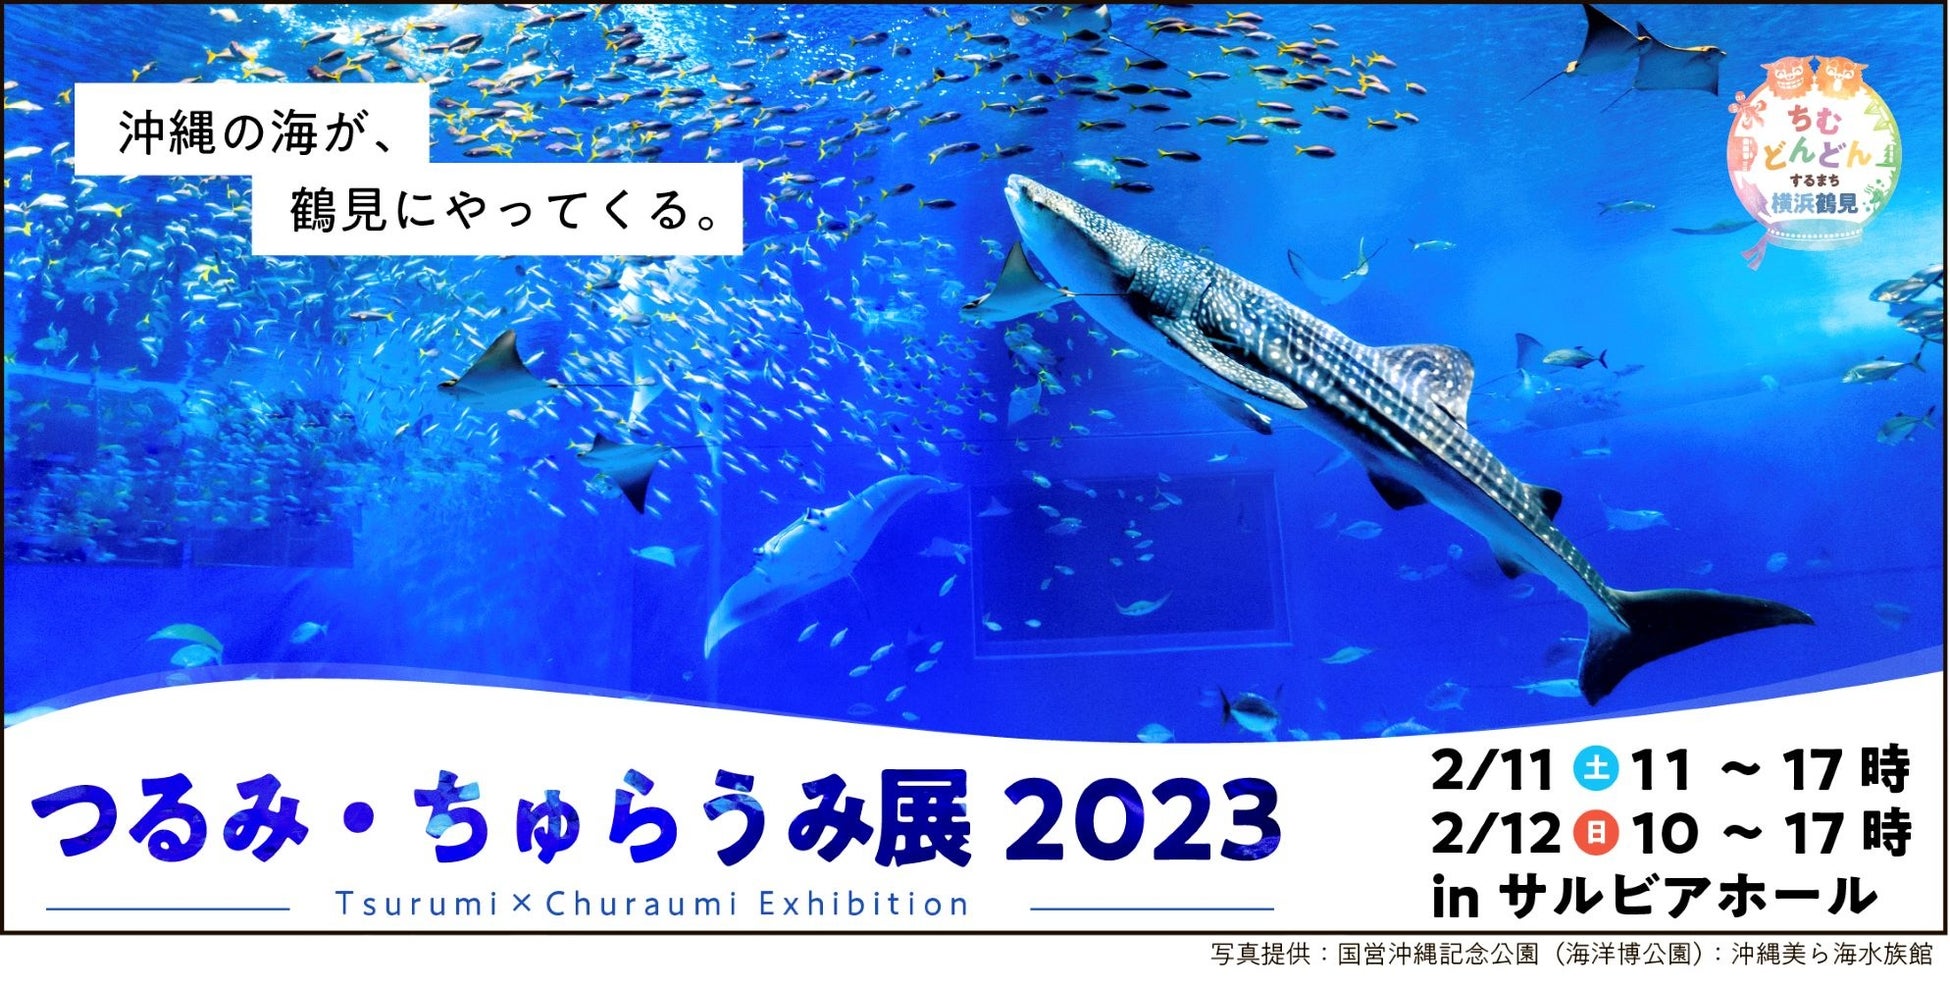 横浜と沖縄がコラボし、海洋環境保護をPR！「つるみ・ちゅらうみ展2023」を開催